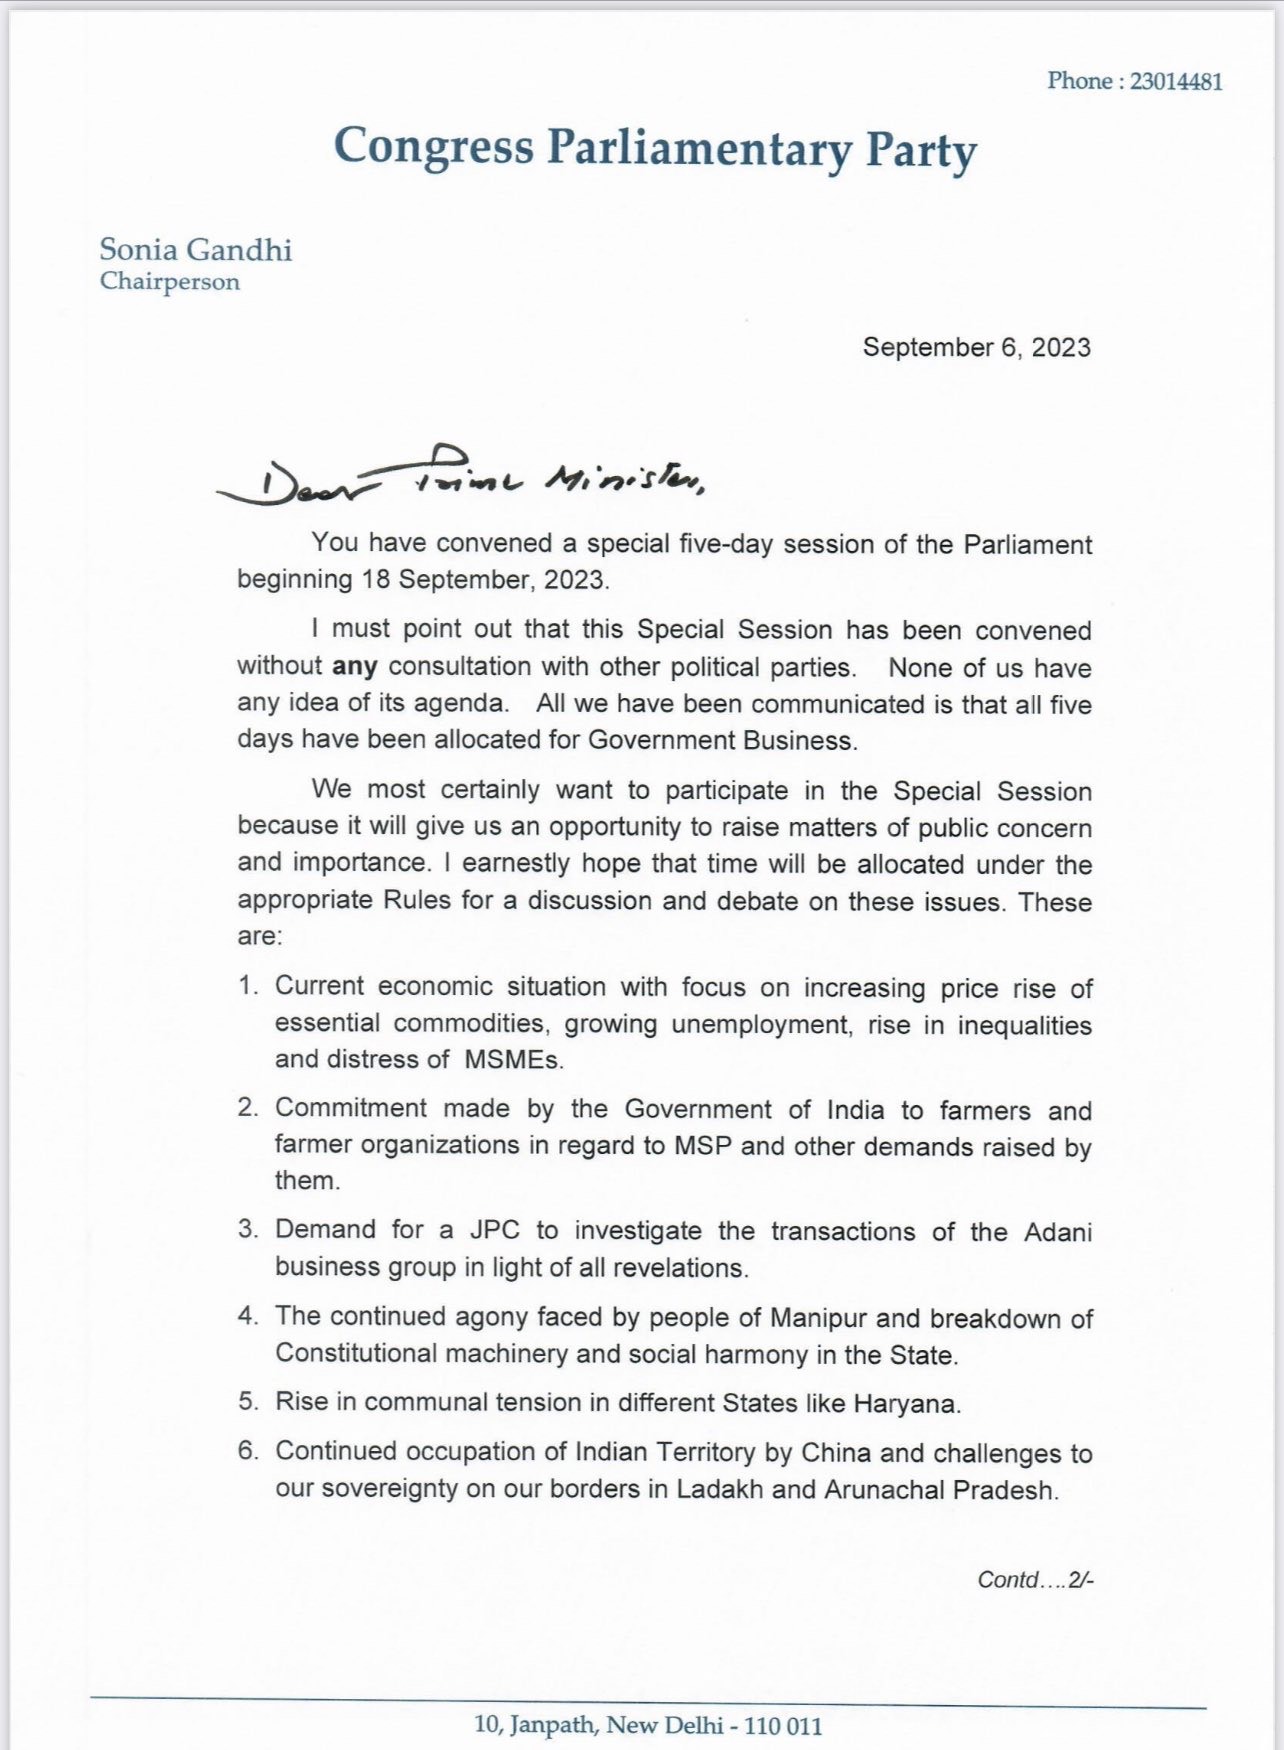 सोनिया गांधी ने पीएम मोदी को लिखी चिट्ठी, विशेष सत्र में नौ मुद्दों पर चर्चा की मांग